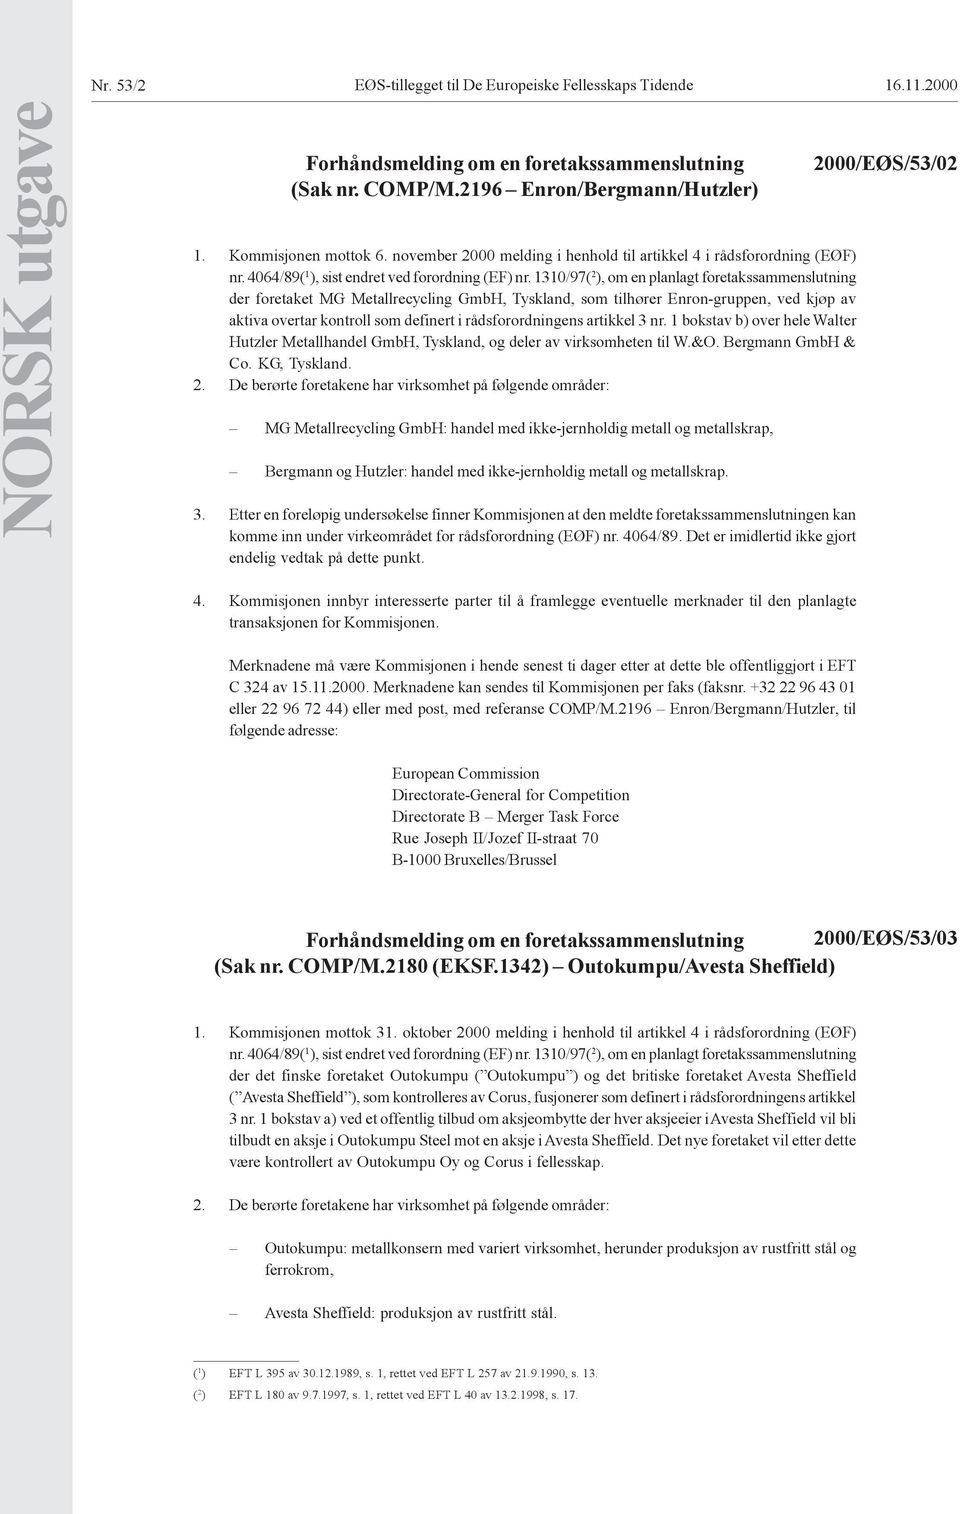 1310/97( 2 ), om en planlagt foretakssammenslutning der foretaket MG Metallrecycling GmbH, Tyskland, som tilhører Enron-gruppen, ved kjøp av aktiva overtar kontroll som definert i rådsforordningens